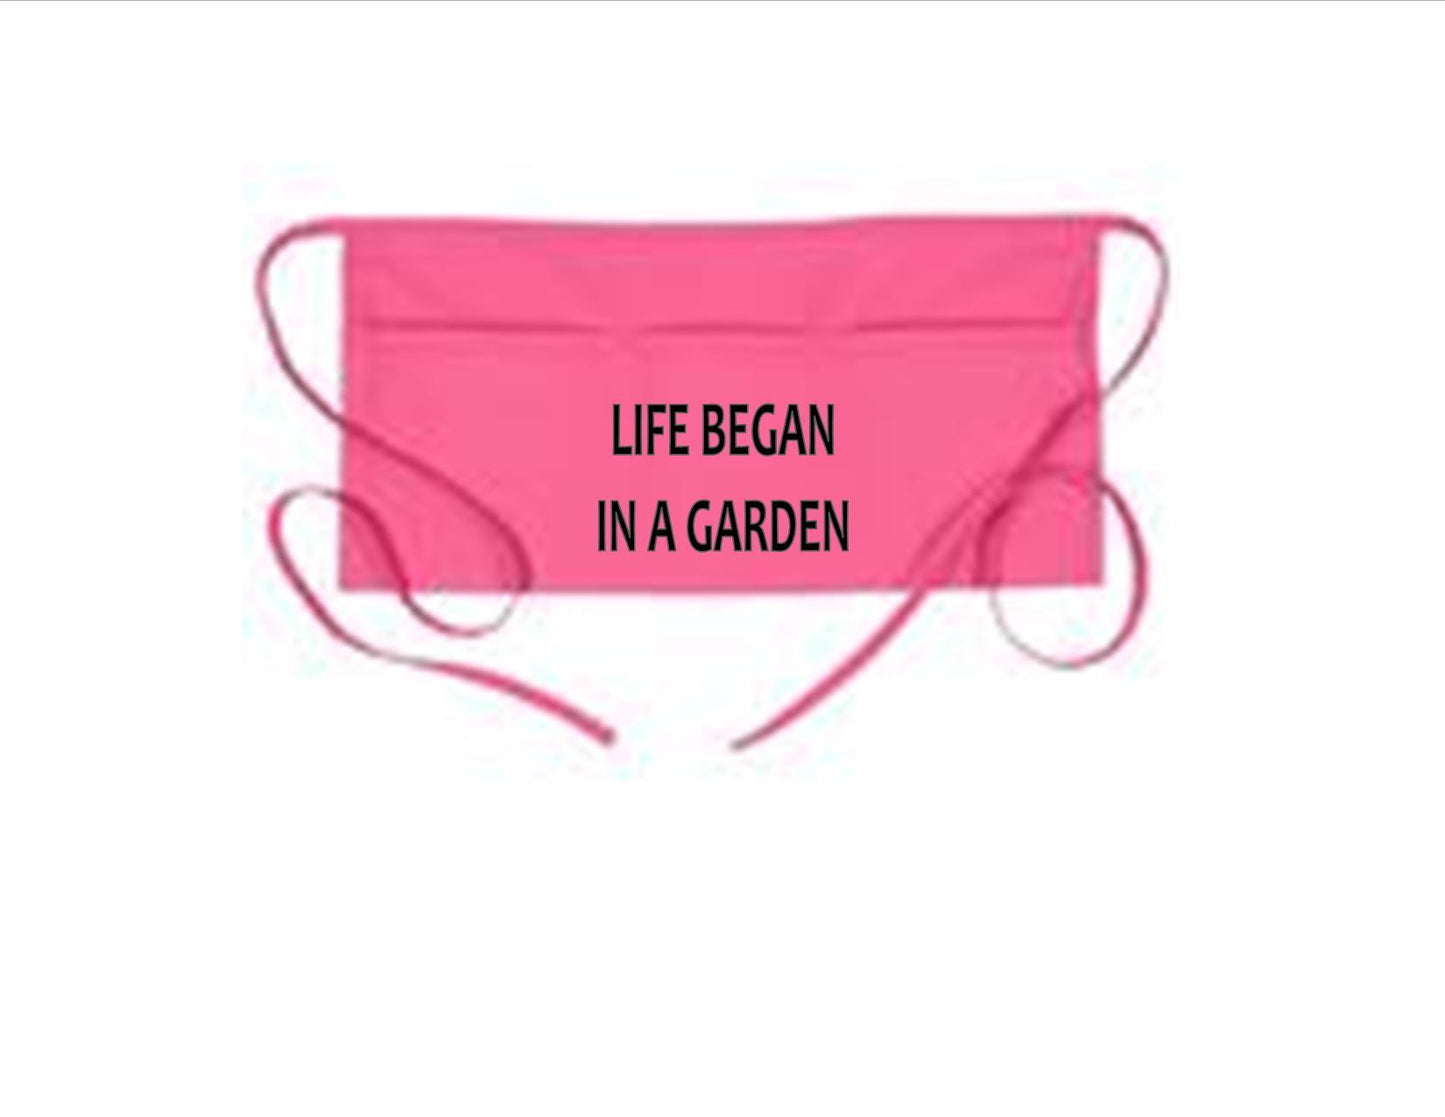 Gran's Garden Apron, 3 Pocket Waist Garden Apron, Life Began